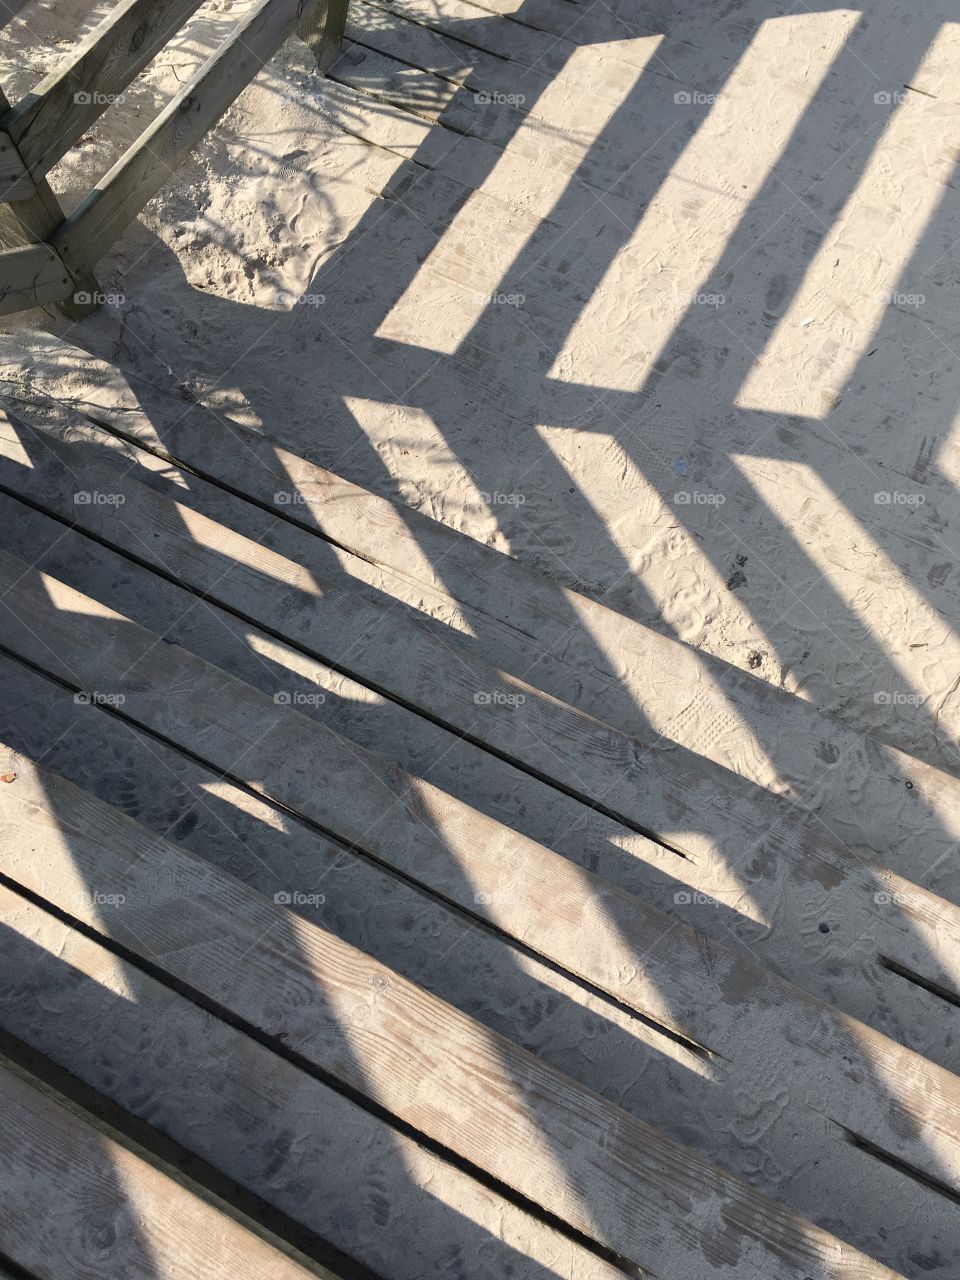 Railing shadow on boardwalk